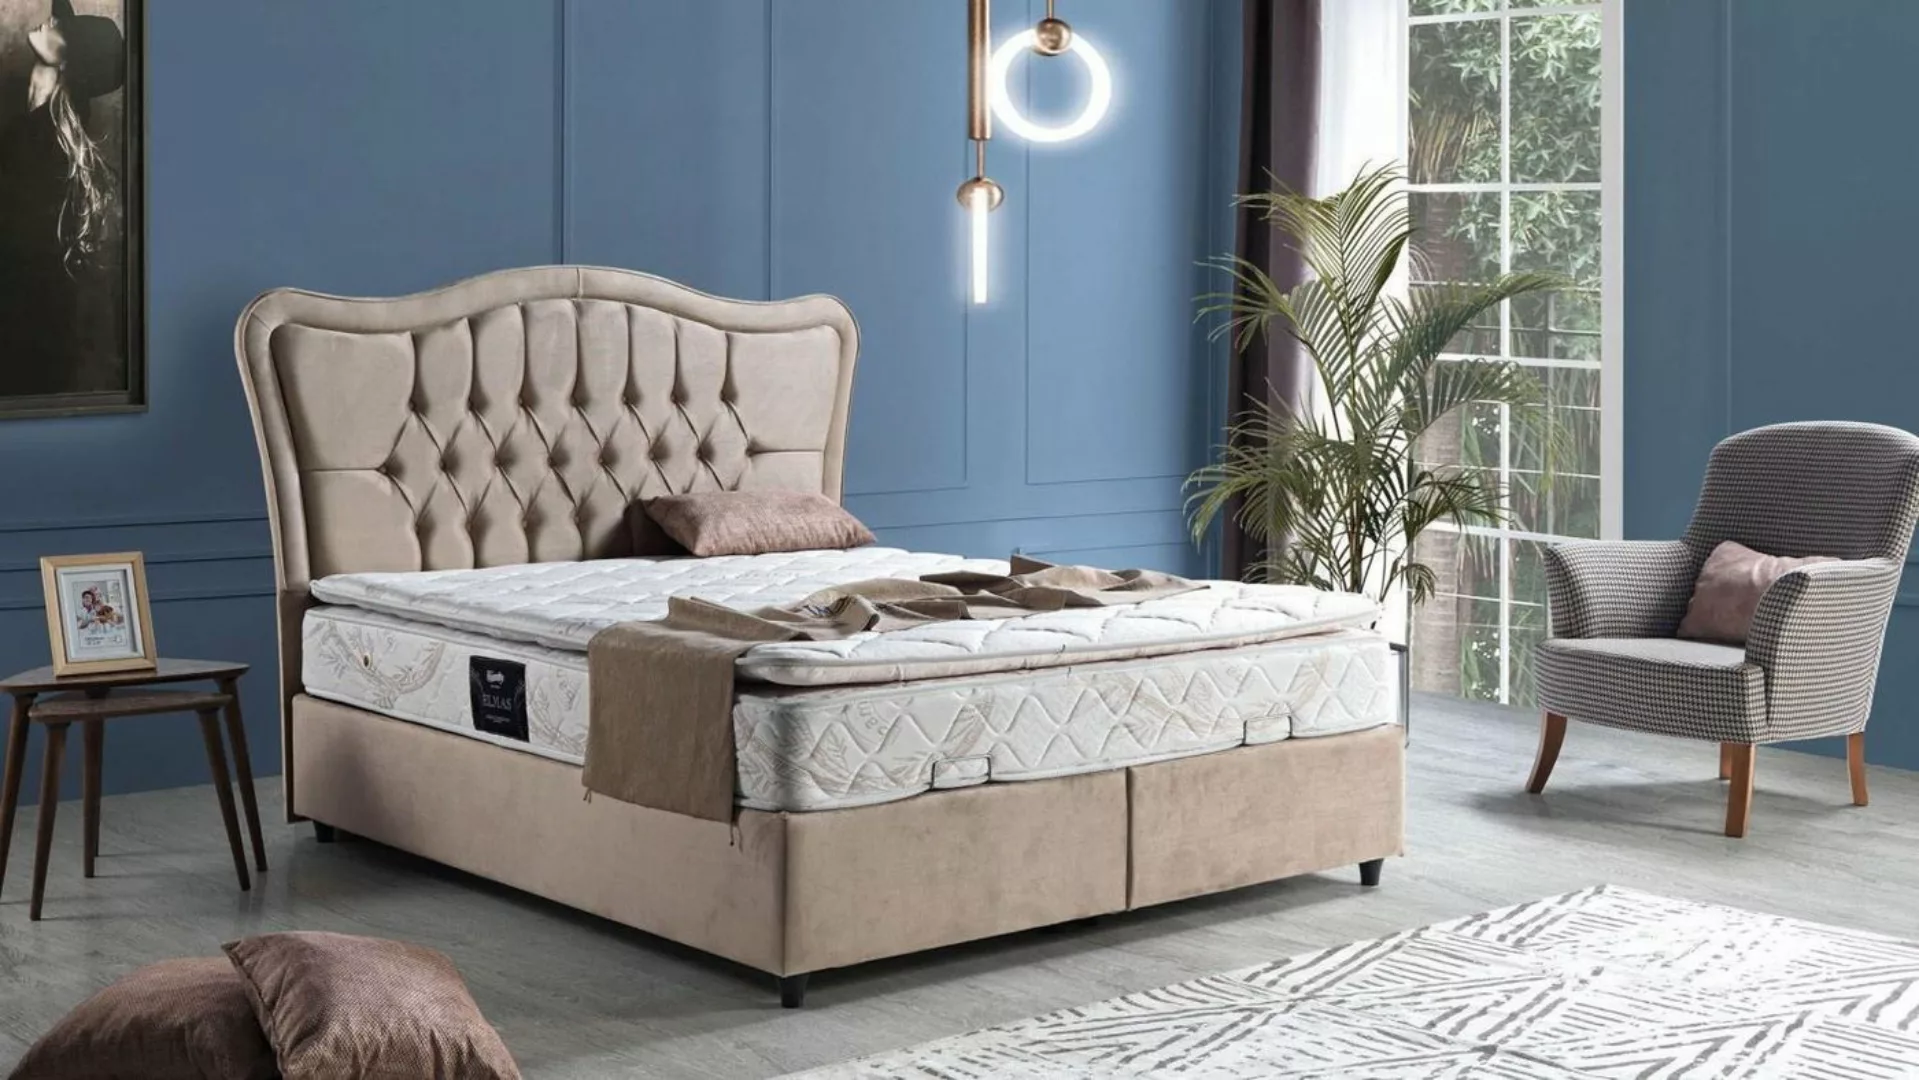 JVmoebel Bett Bett Design Betten Luxus Polster Schlafzimmer Möbel Modern Be günstig online kaufen